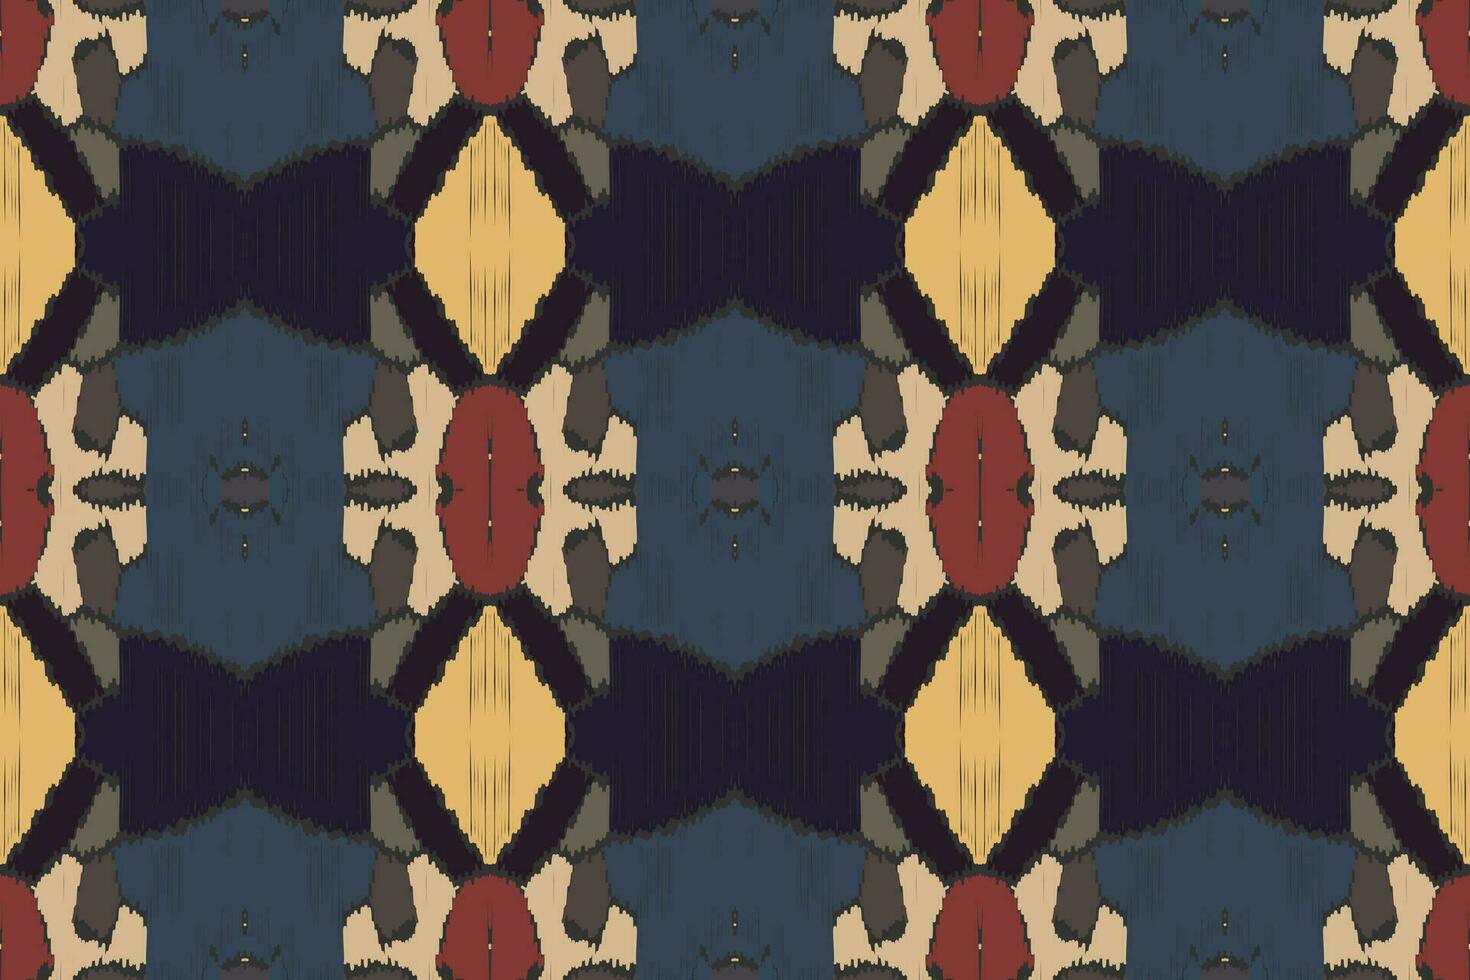 motiv ikat paisley broderi bakgrund. ikat blomma geometrisk etnisk orientalisk mönster traditionell.aztec stil abstrakt vektor illustration.design för textur, tyg, kläder, inslagning, sarong.